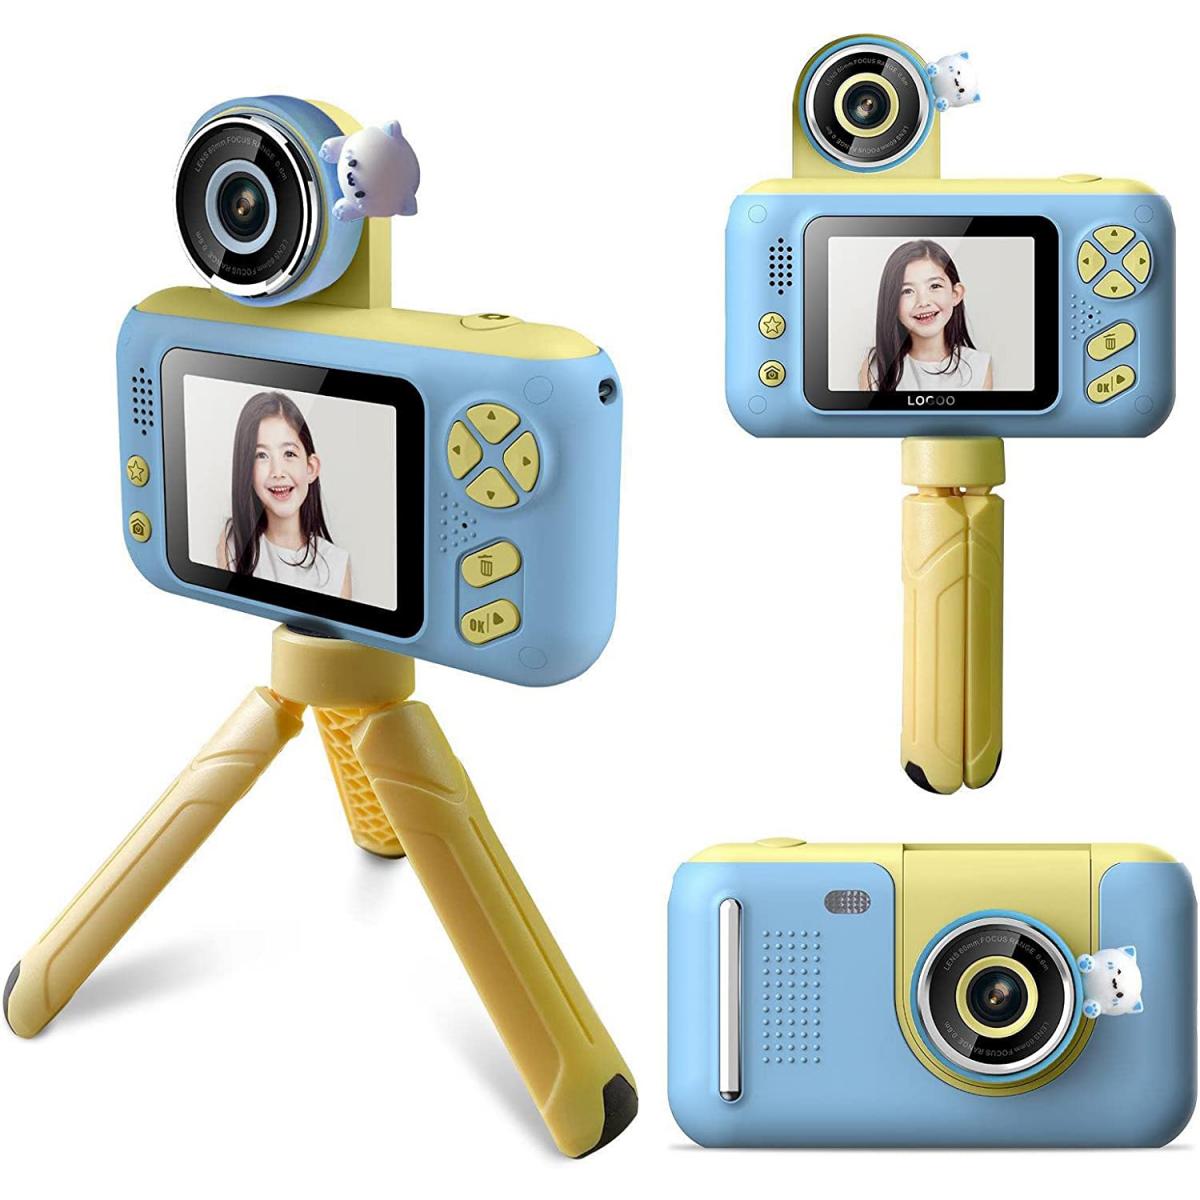 Estas son las mejores cámaras digitales para niños